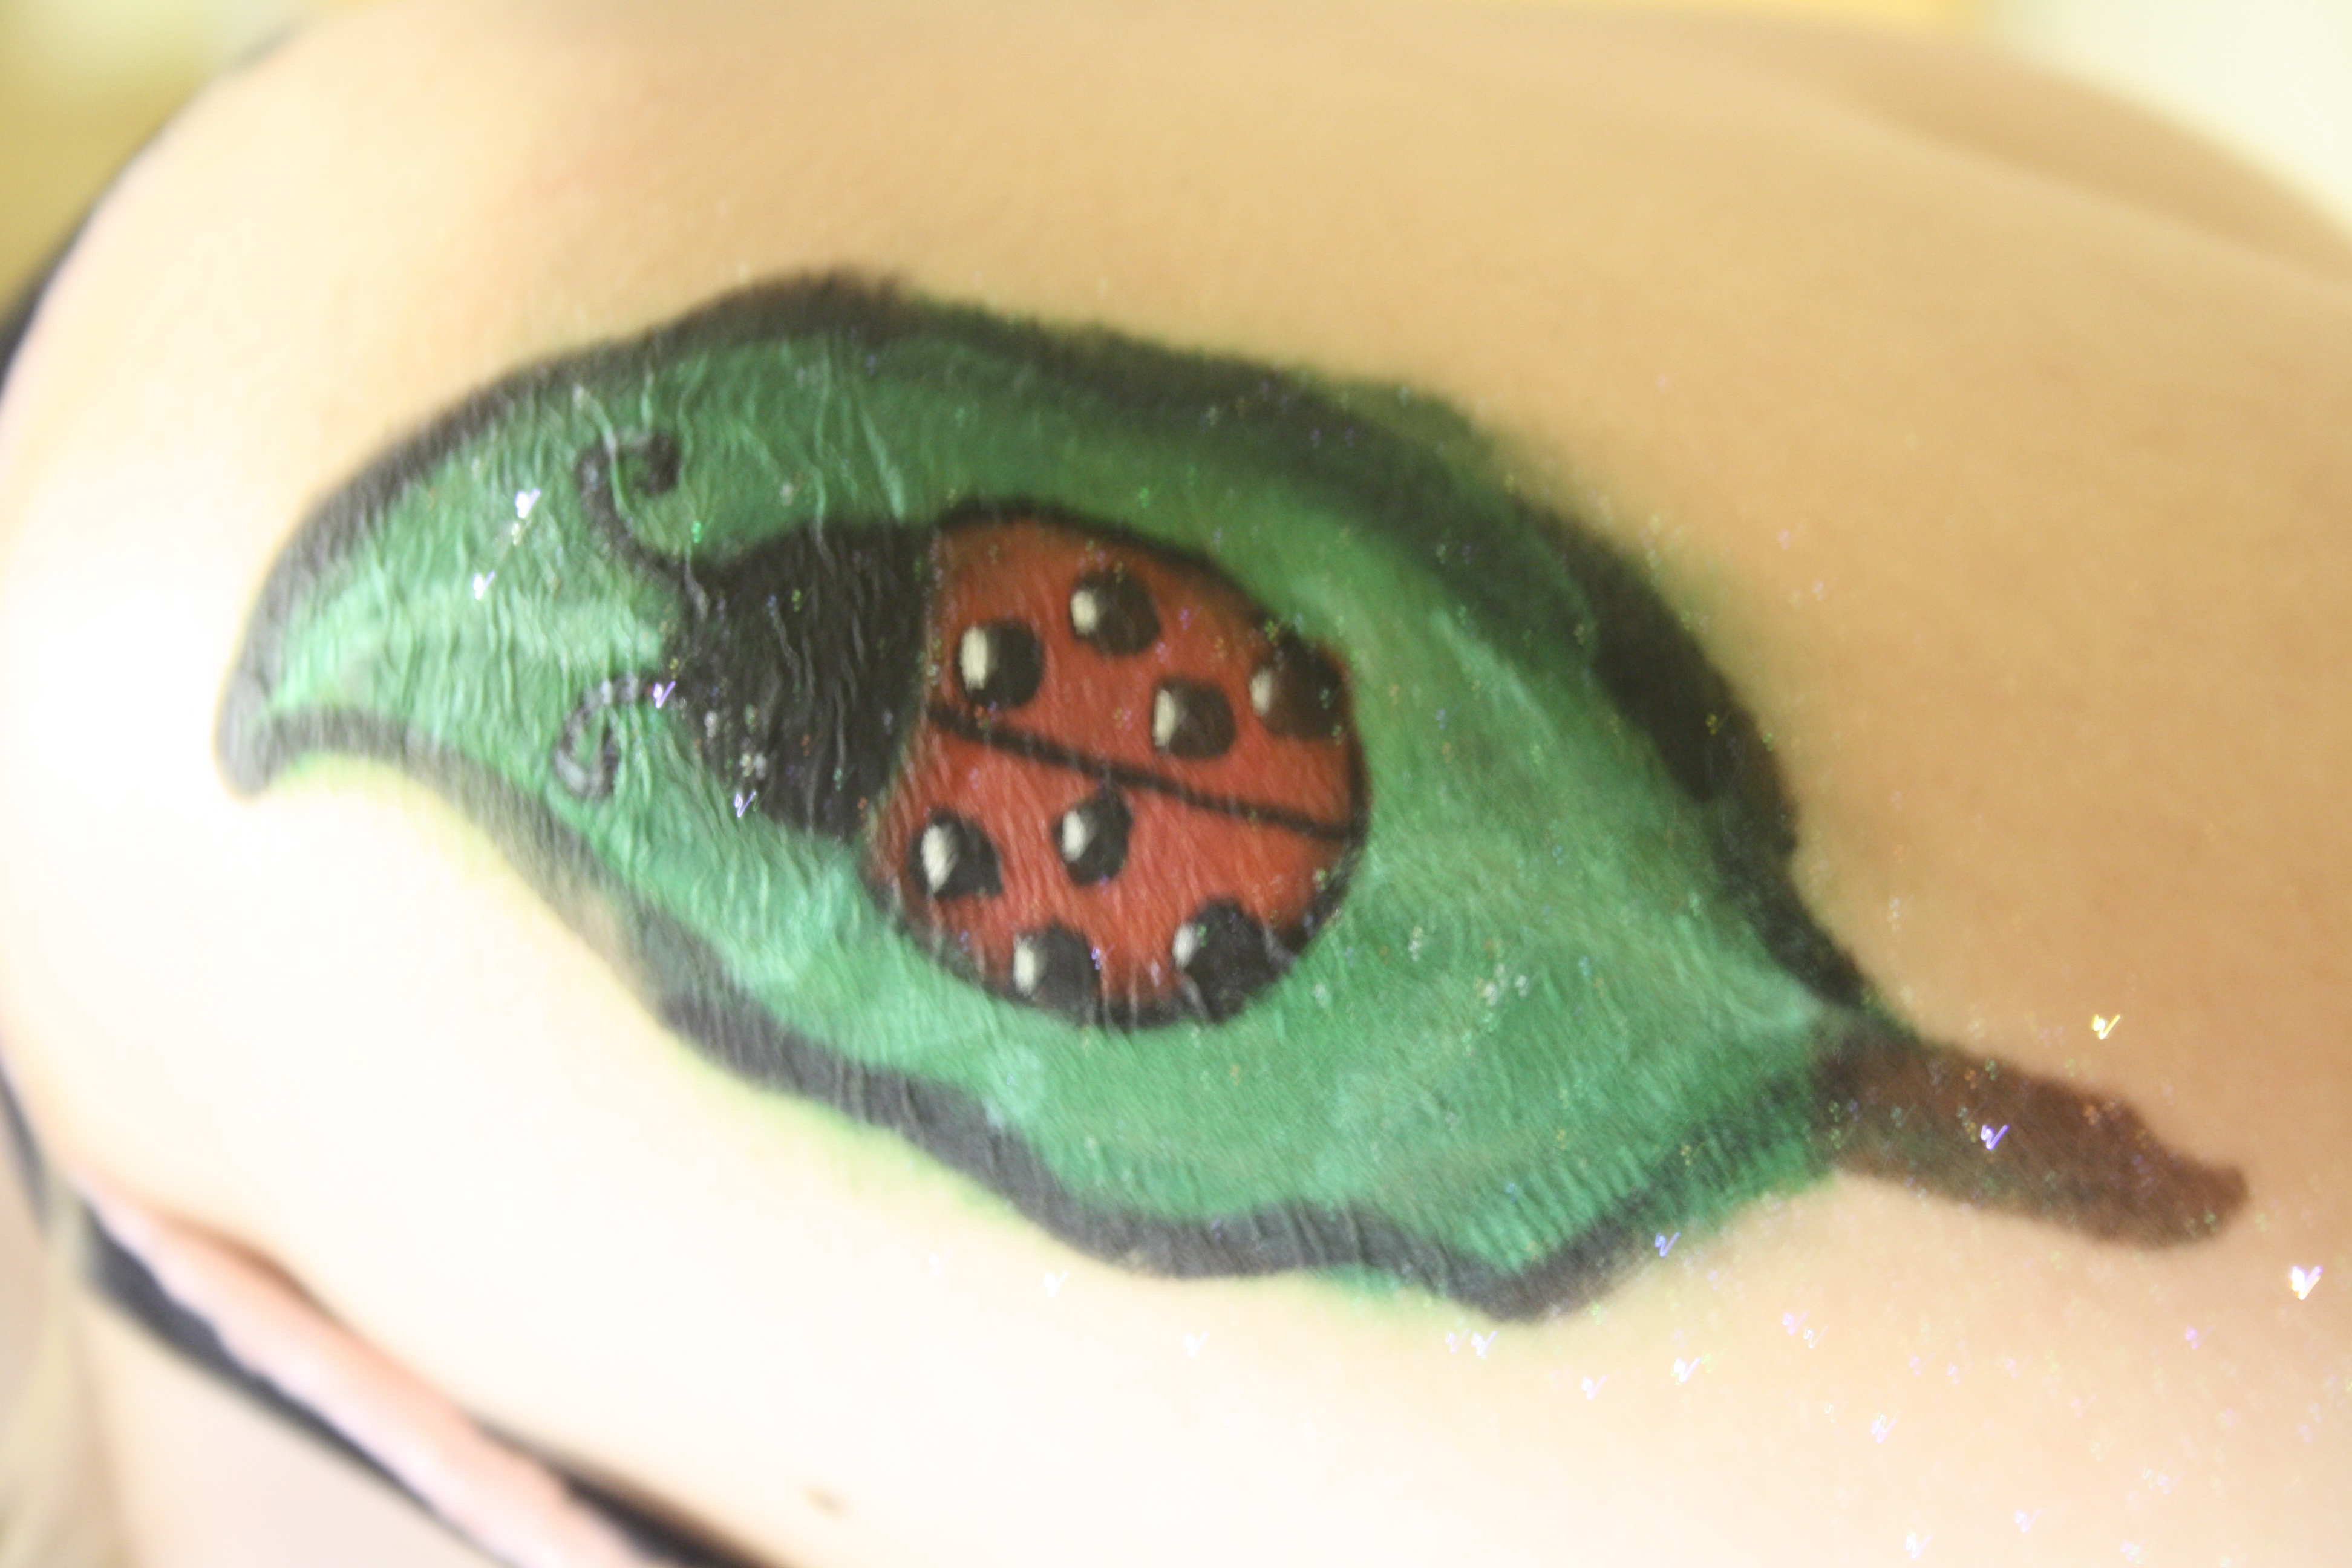 ladybug tattoos